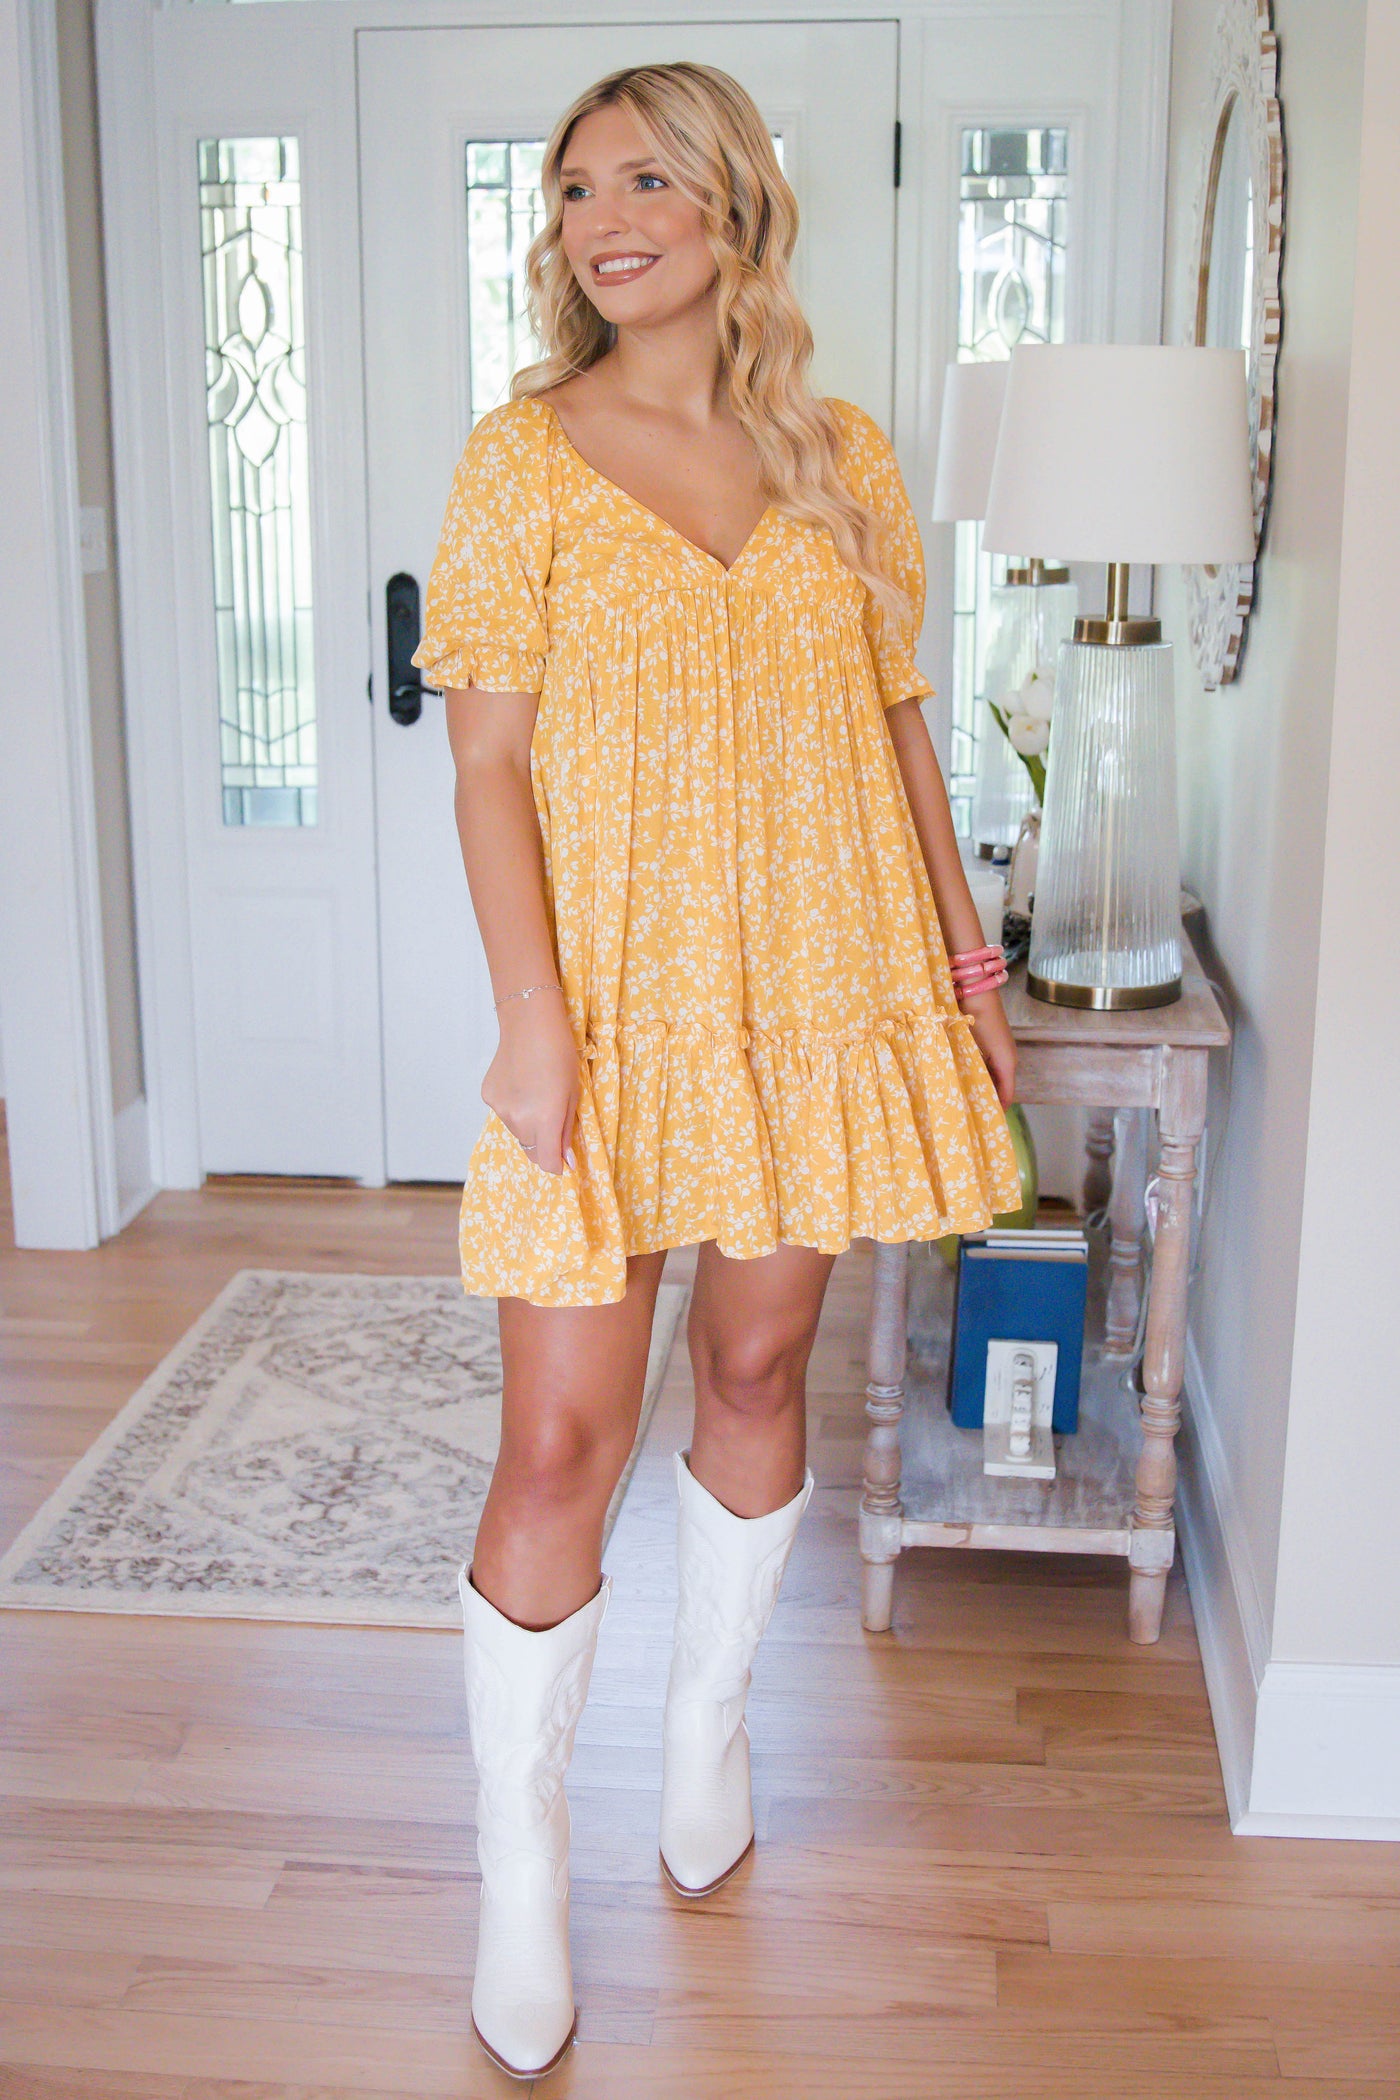 Yellow Floral Dress- Women's Short Sleeve Dress